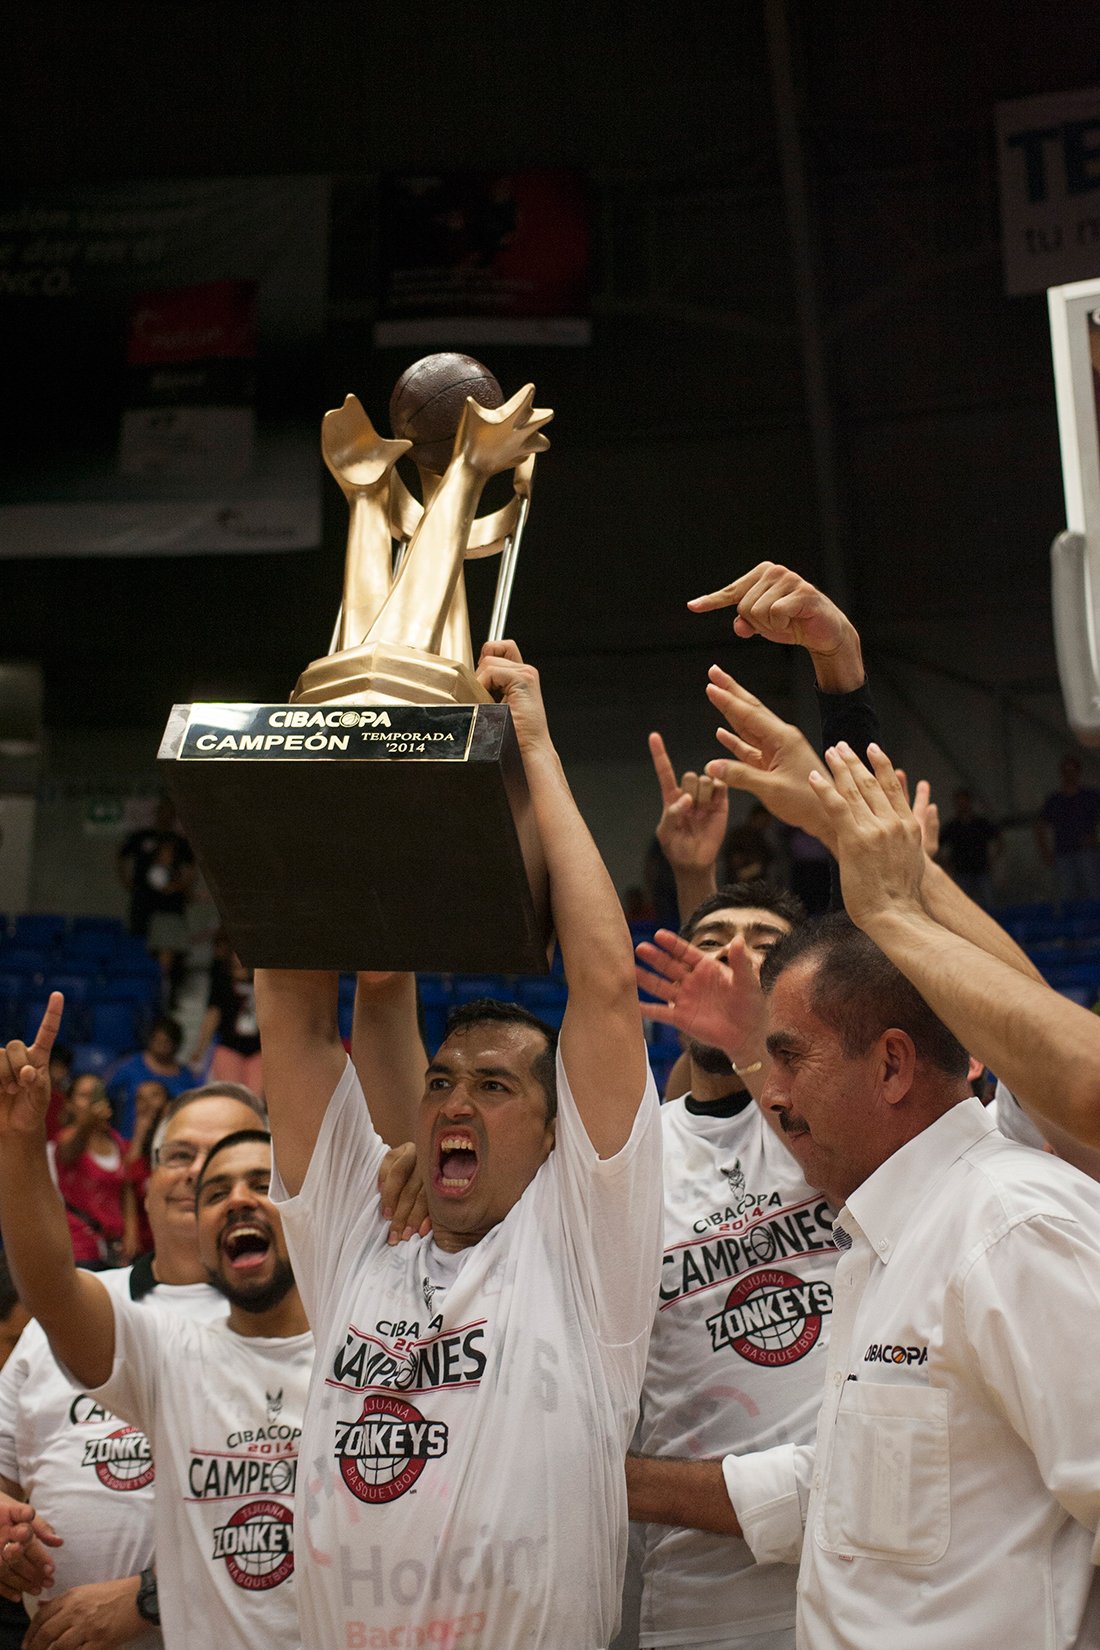 ZONKEYS campeones de la cibacopa 2014 en viva basquet